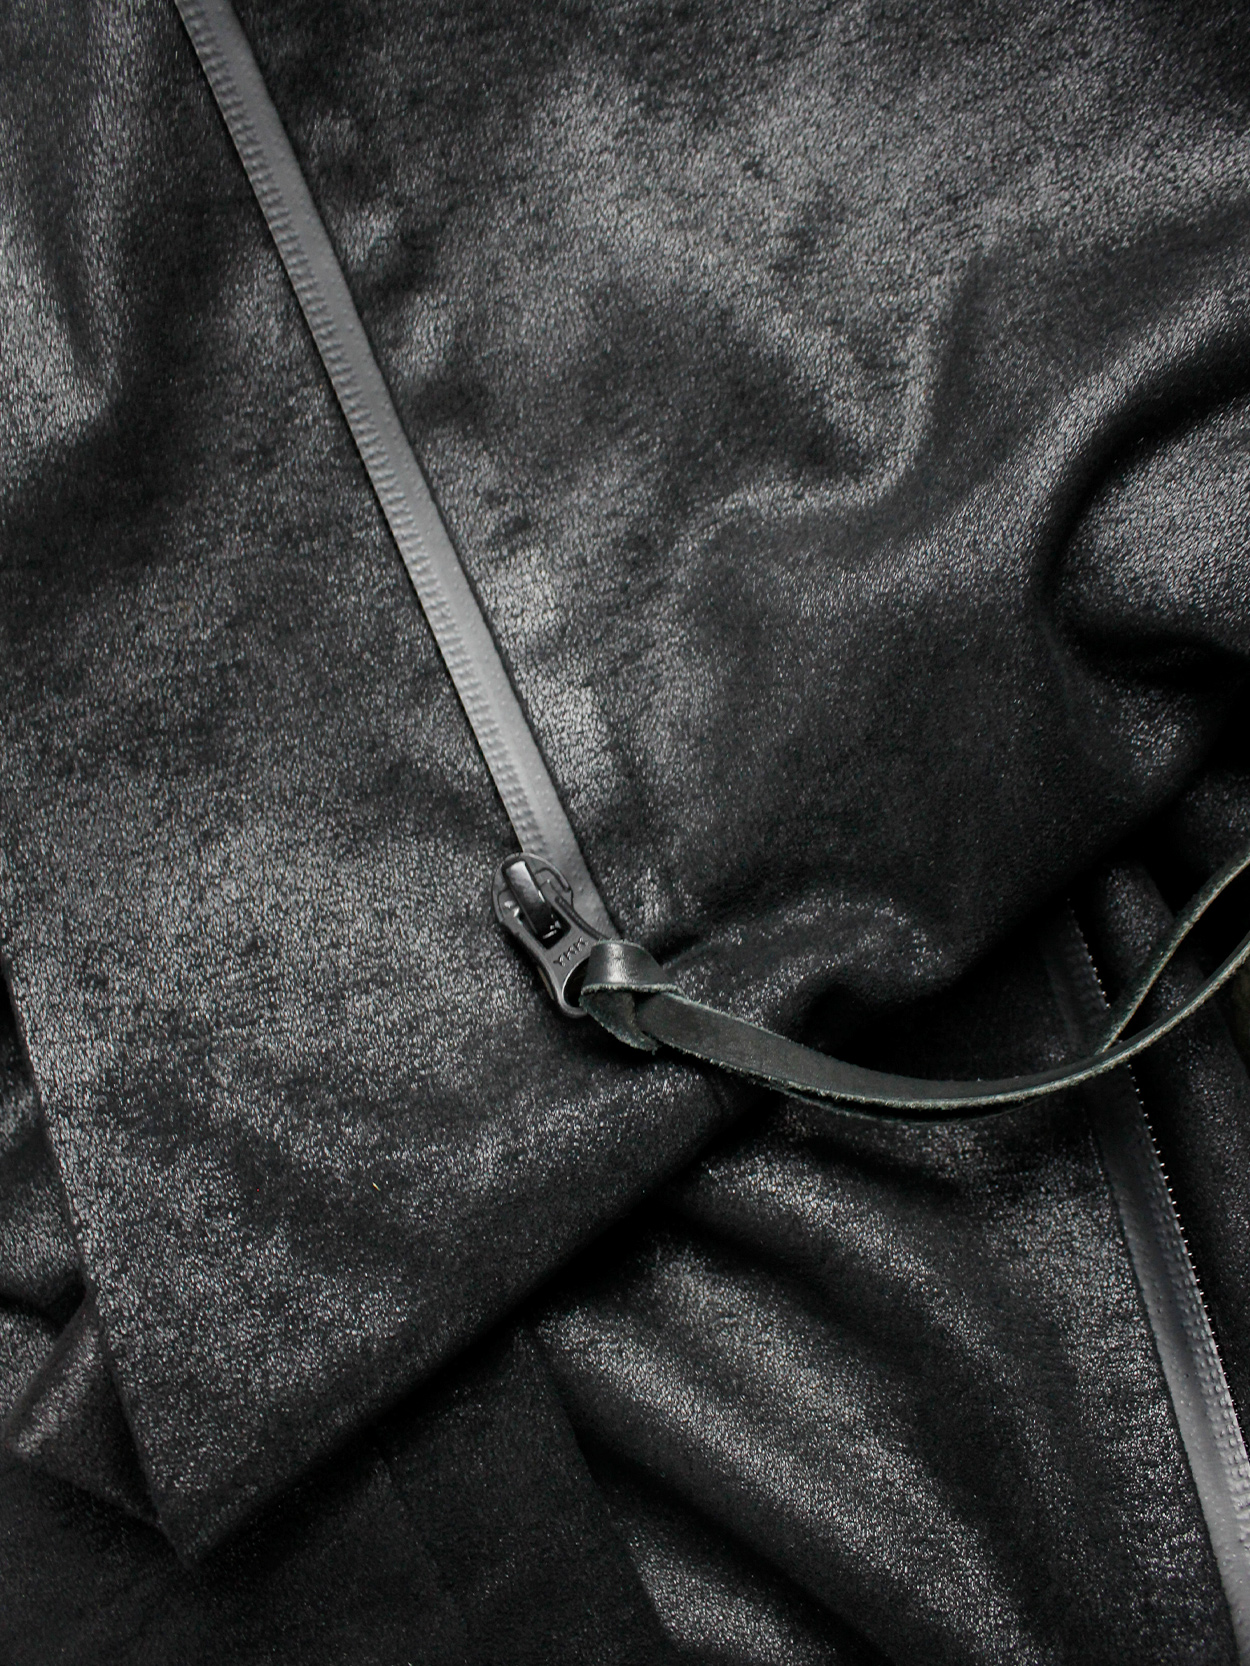 af Vandevorst black fencing jacket with front cowl drape fall 2010 (14)